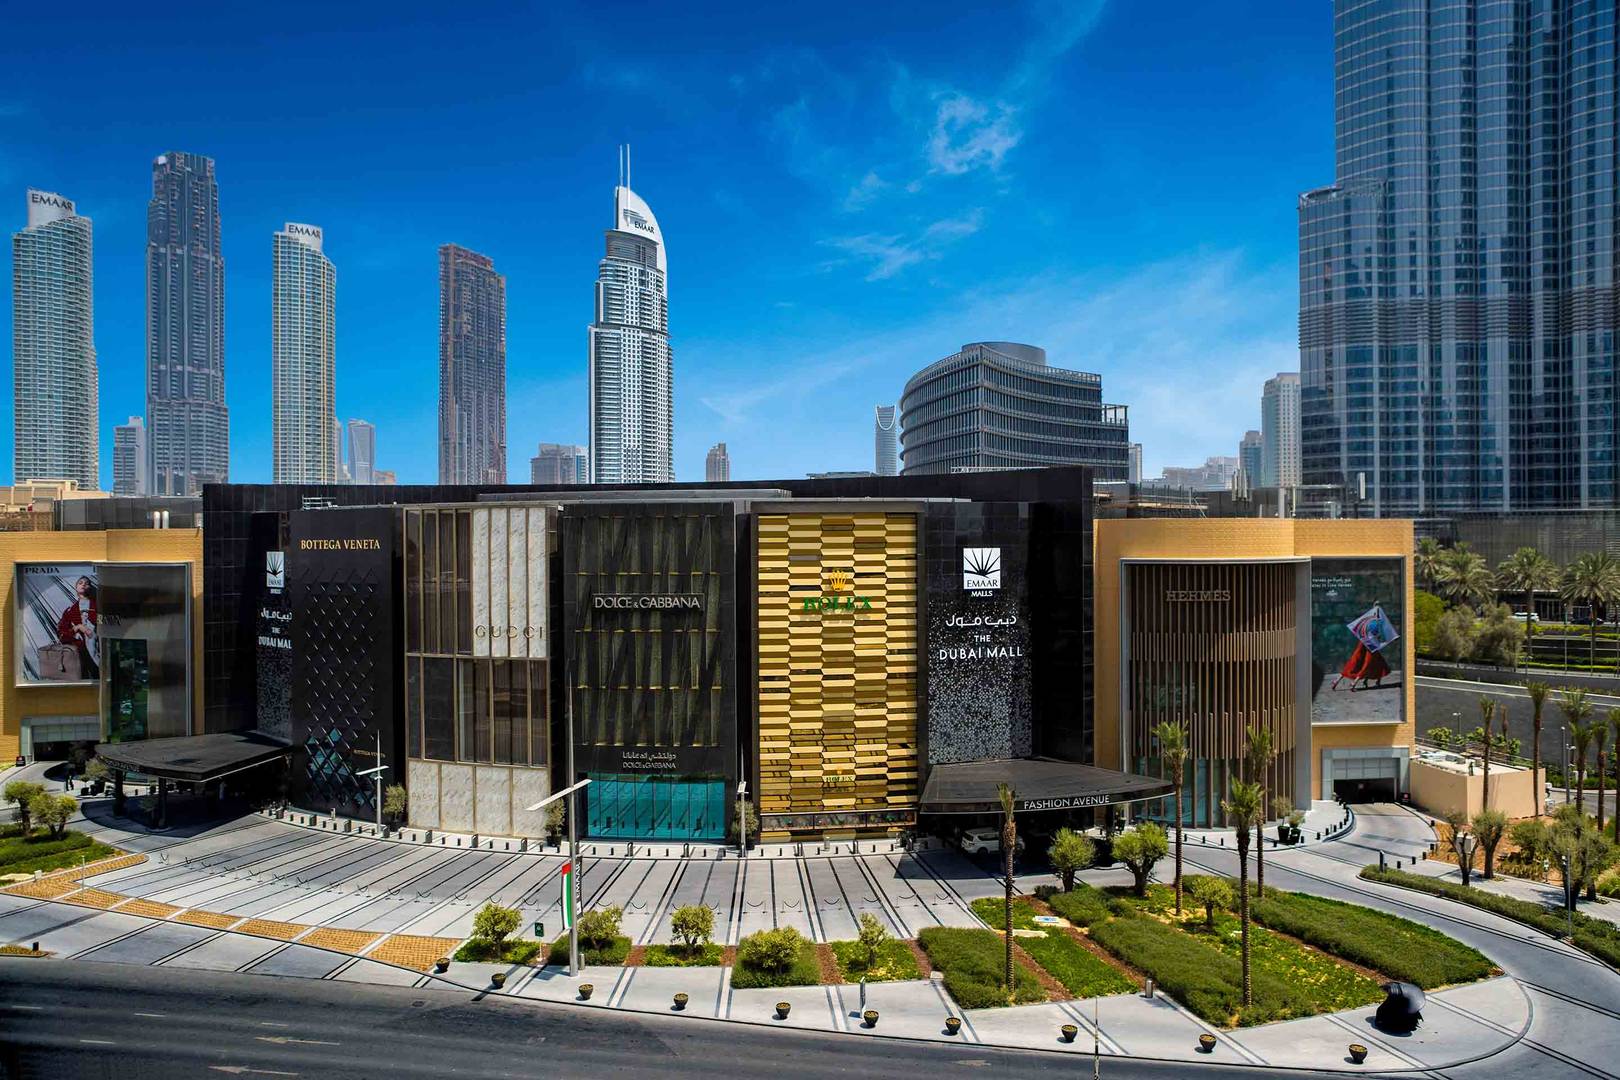 Dubai's best shopping malls Jumeirah Dubai